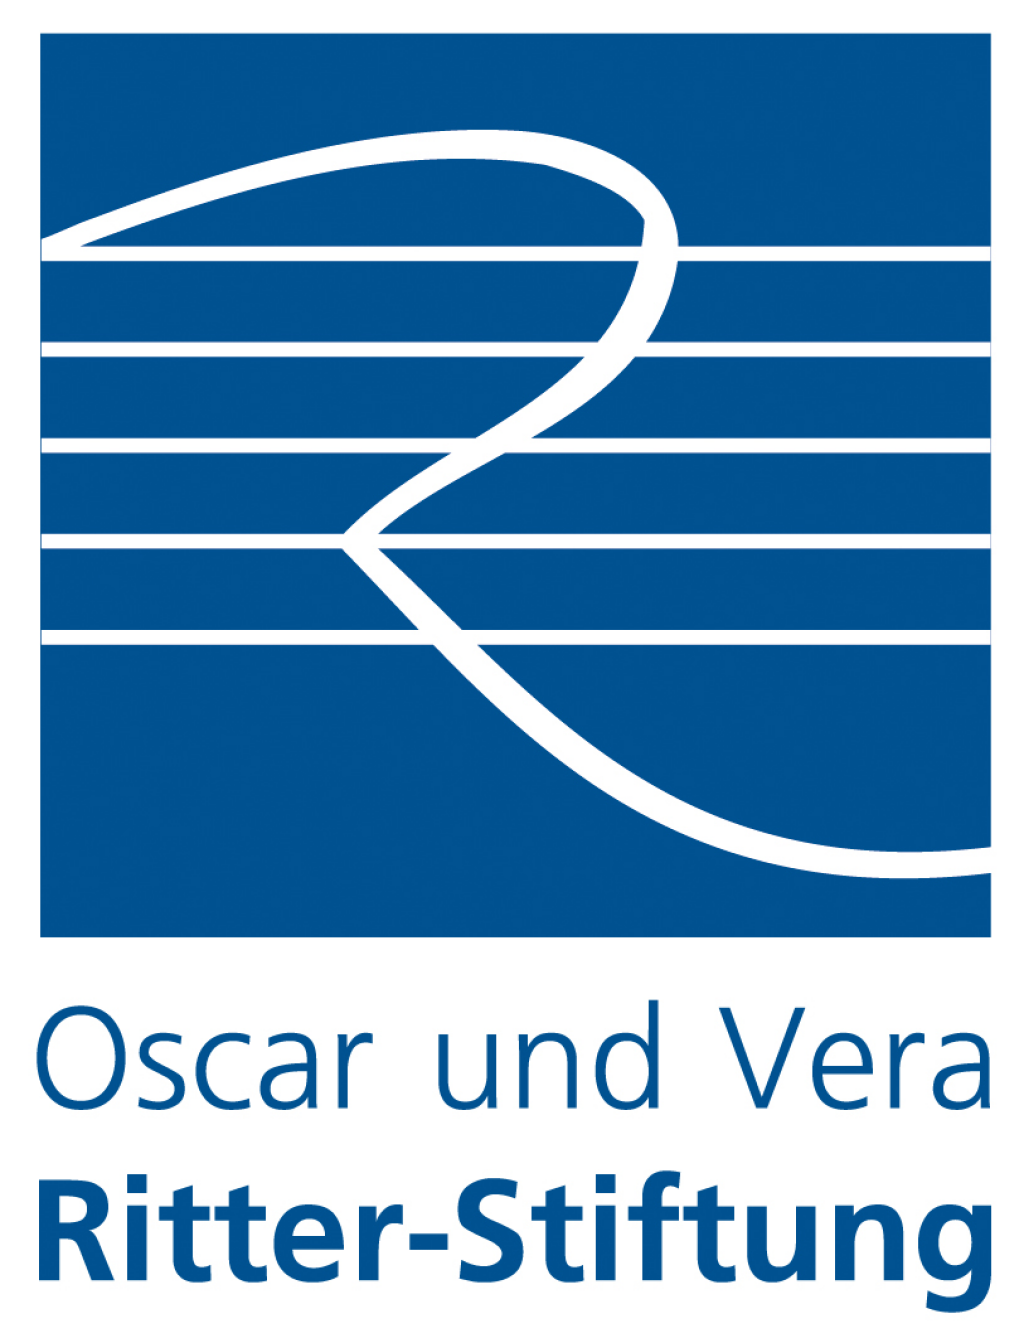 Logo of Oscar und Vera Ritter-Stiftung.